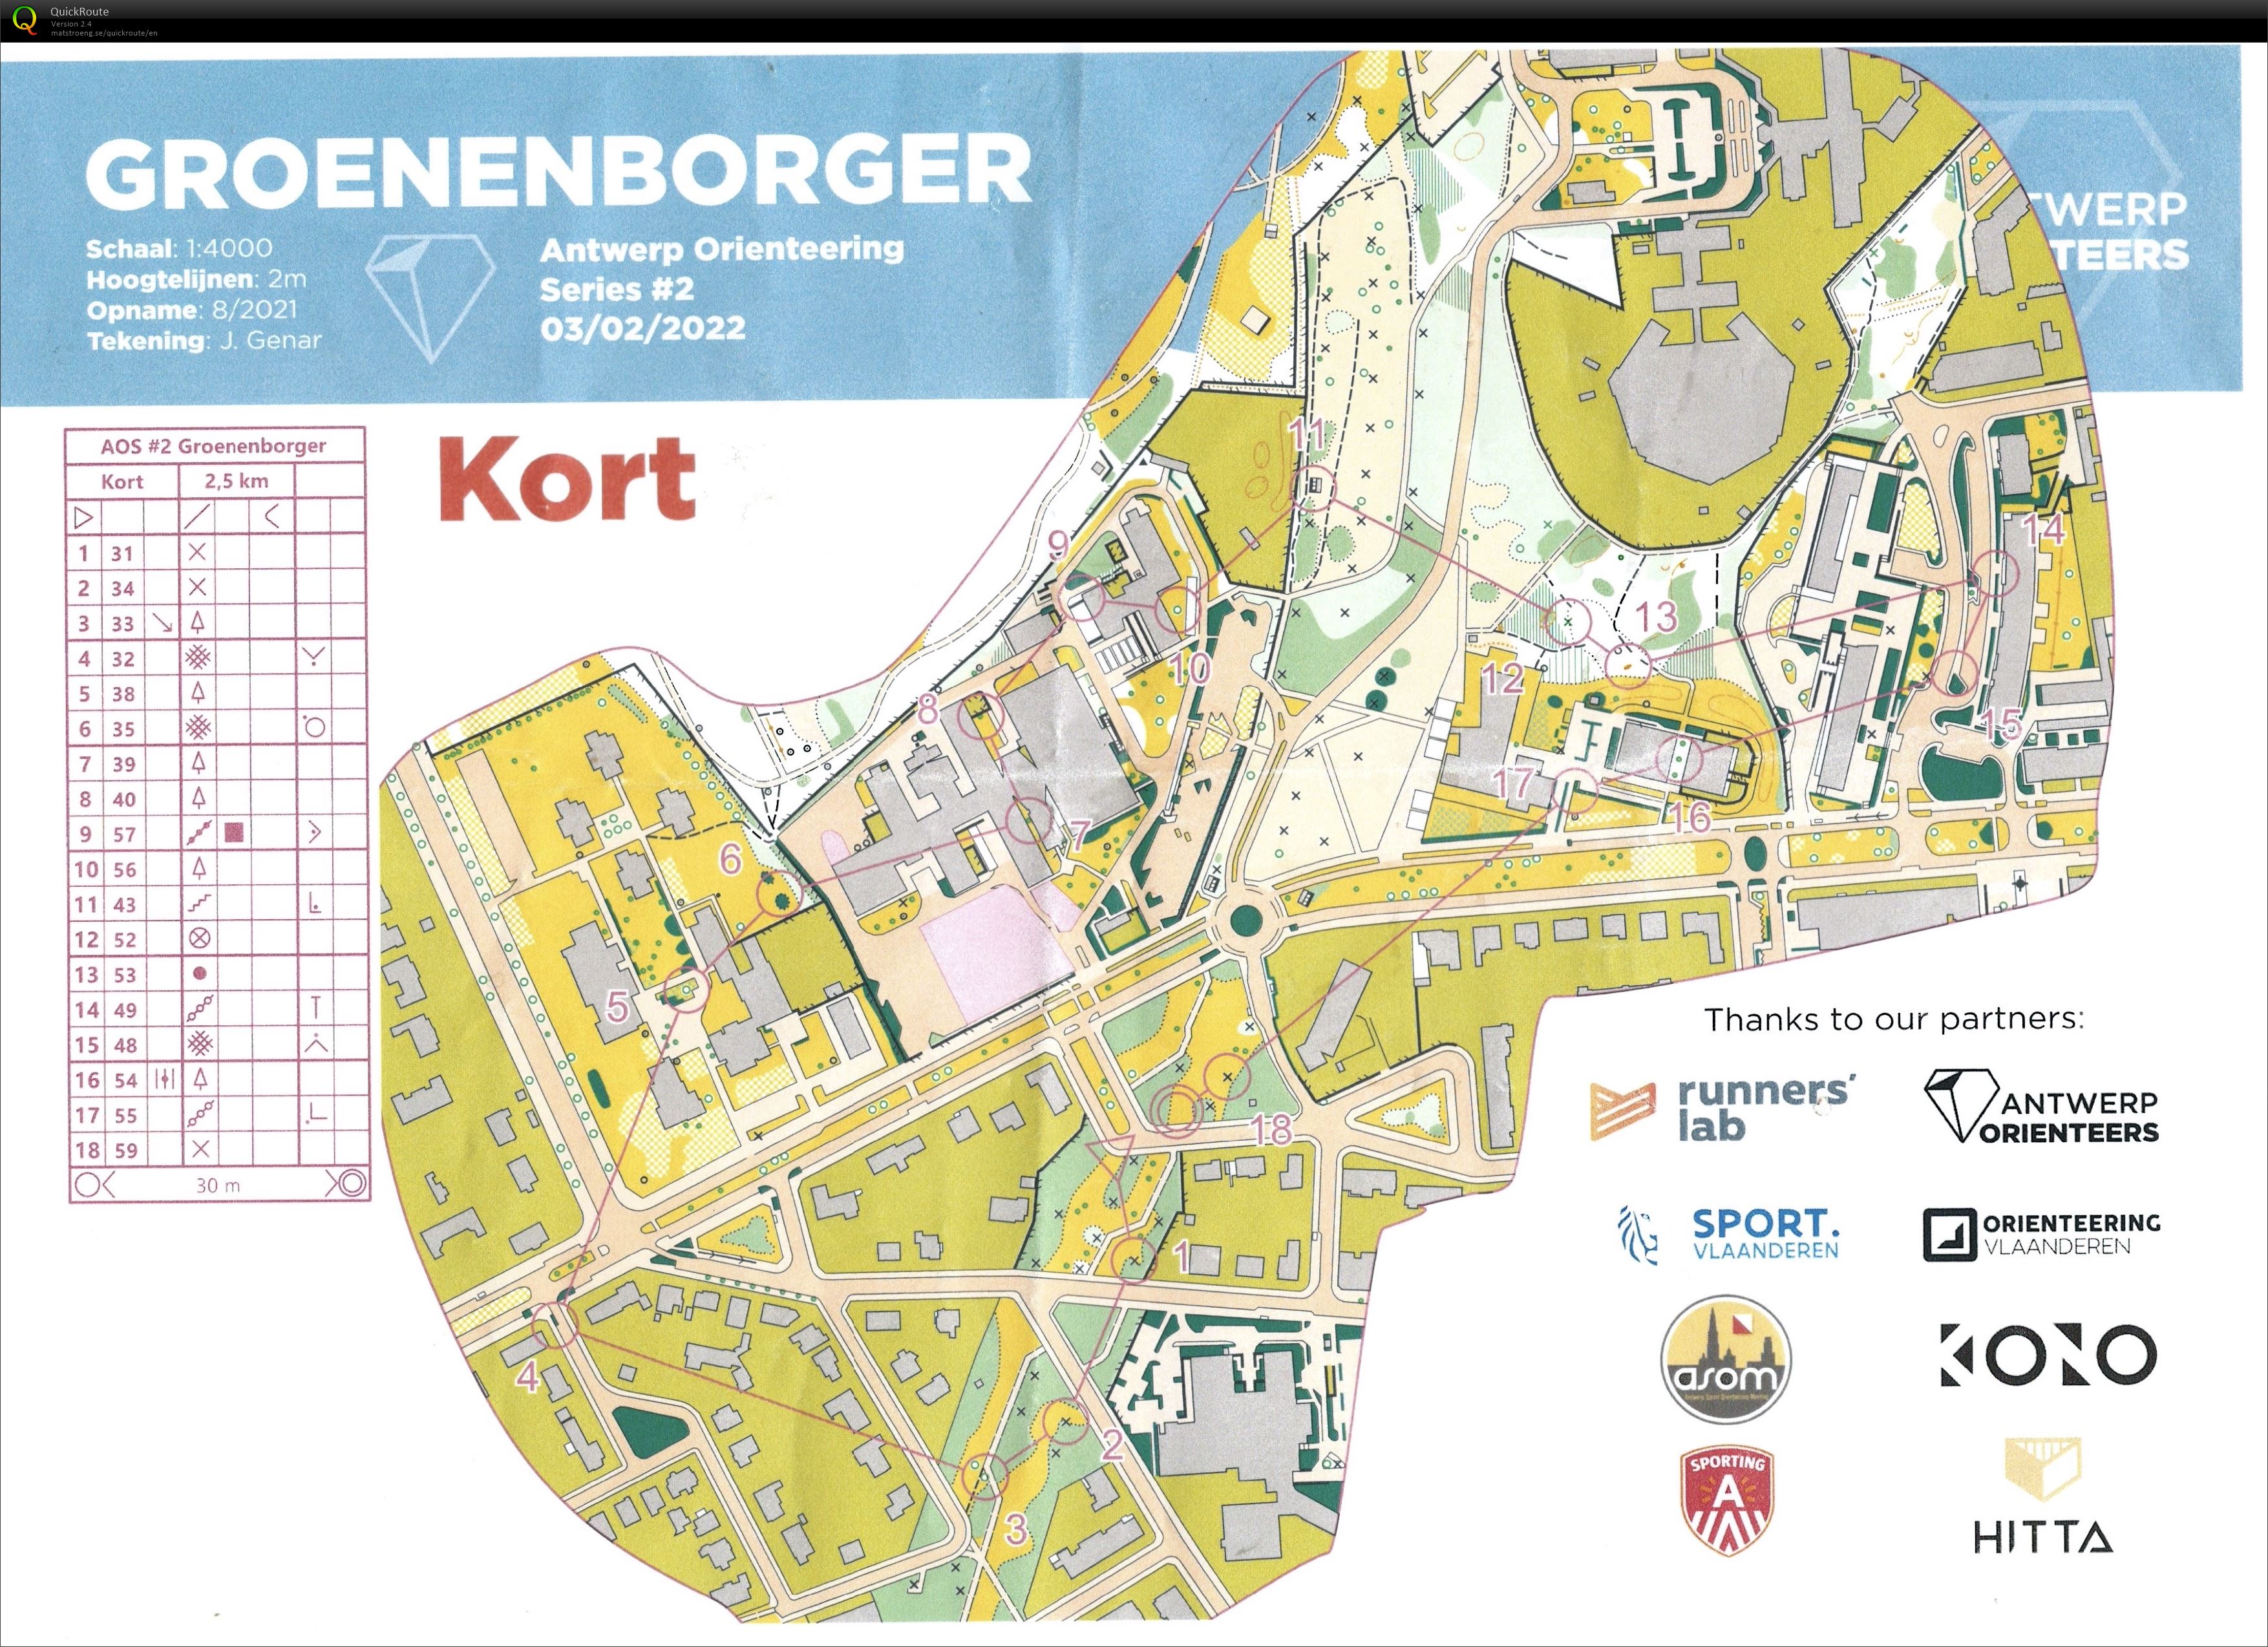 Antwerp Orienteering Series - Groenenborger - Kort (03.02.2022)